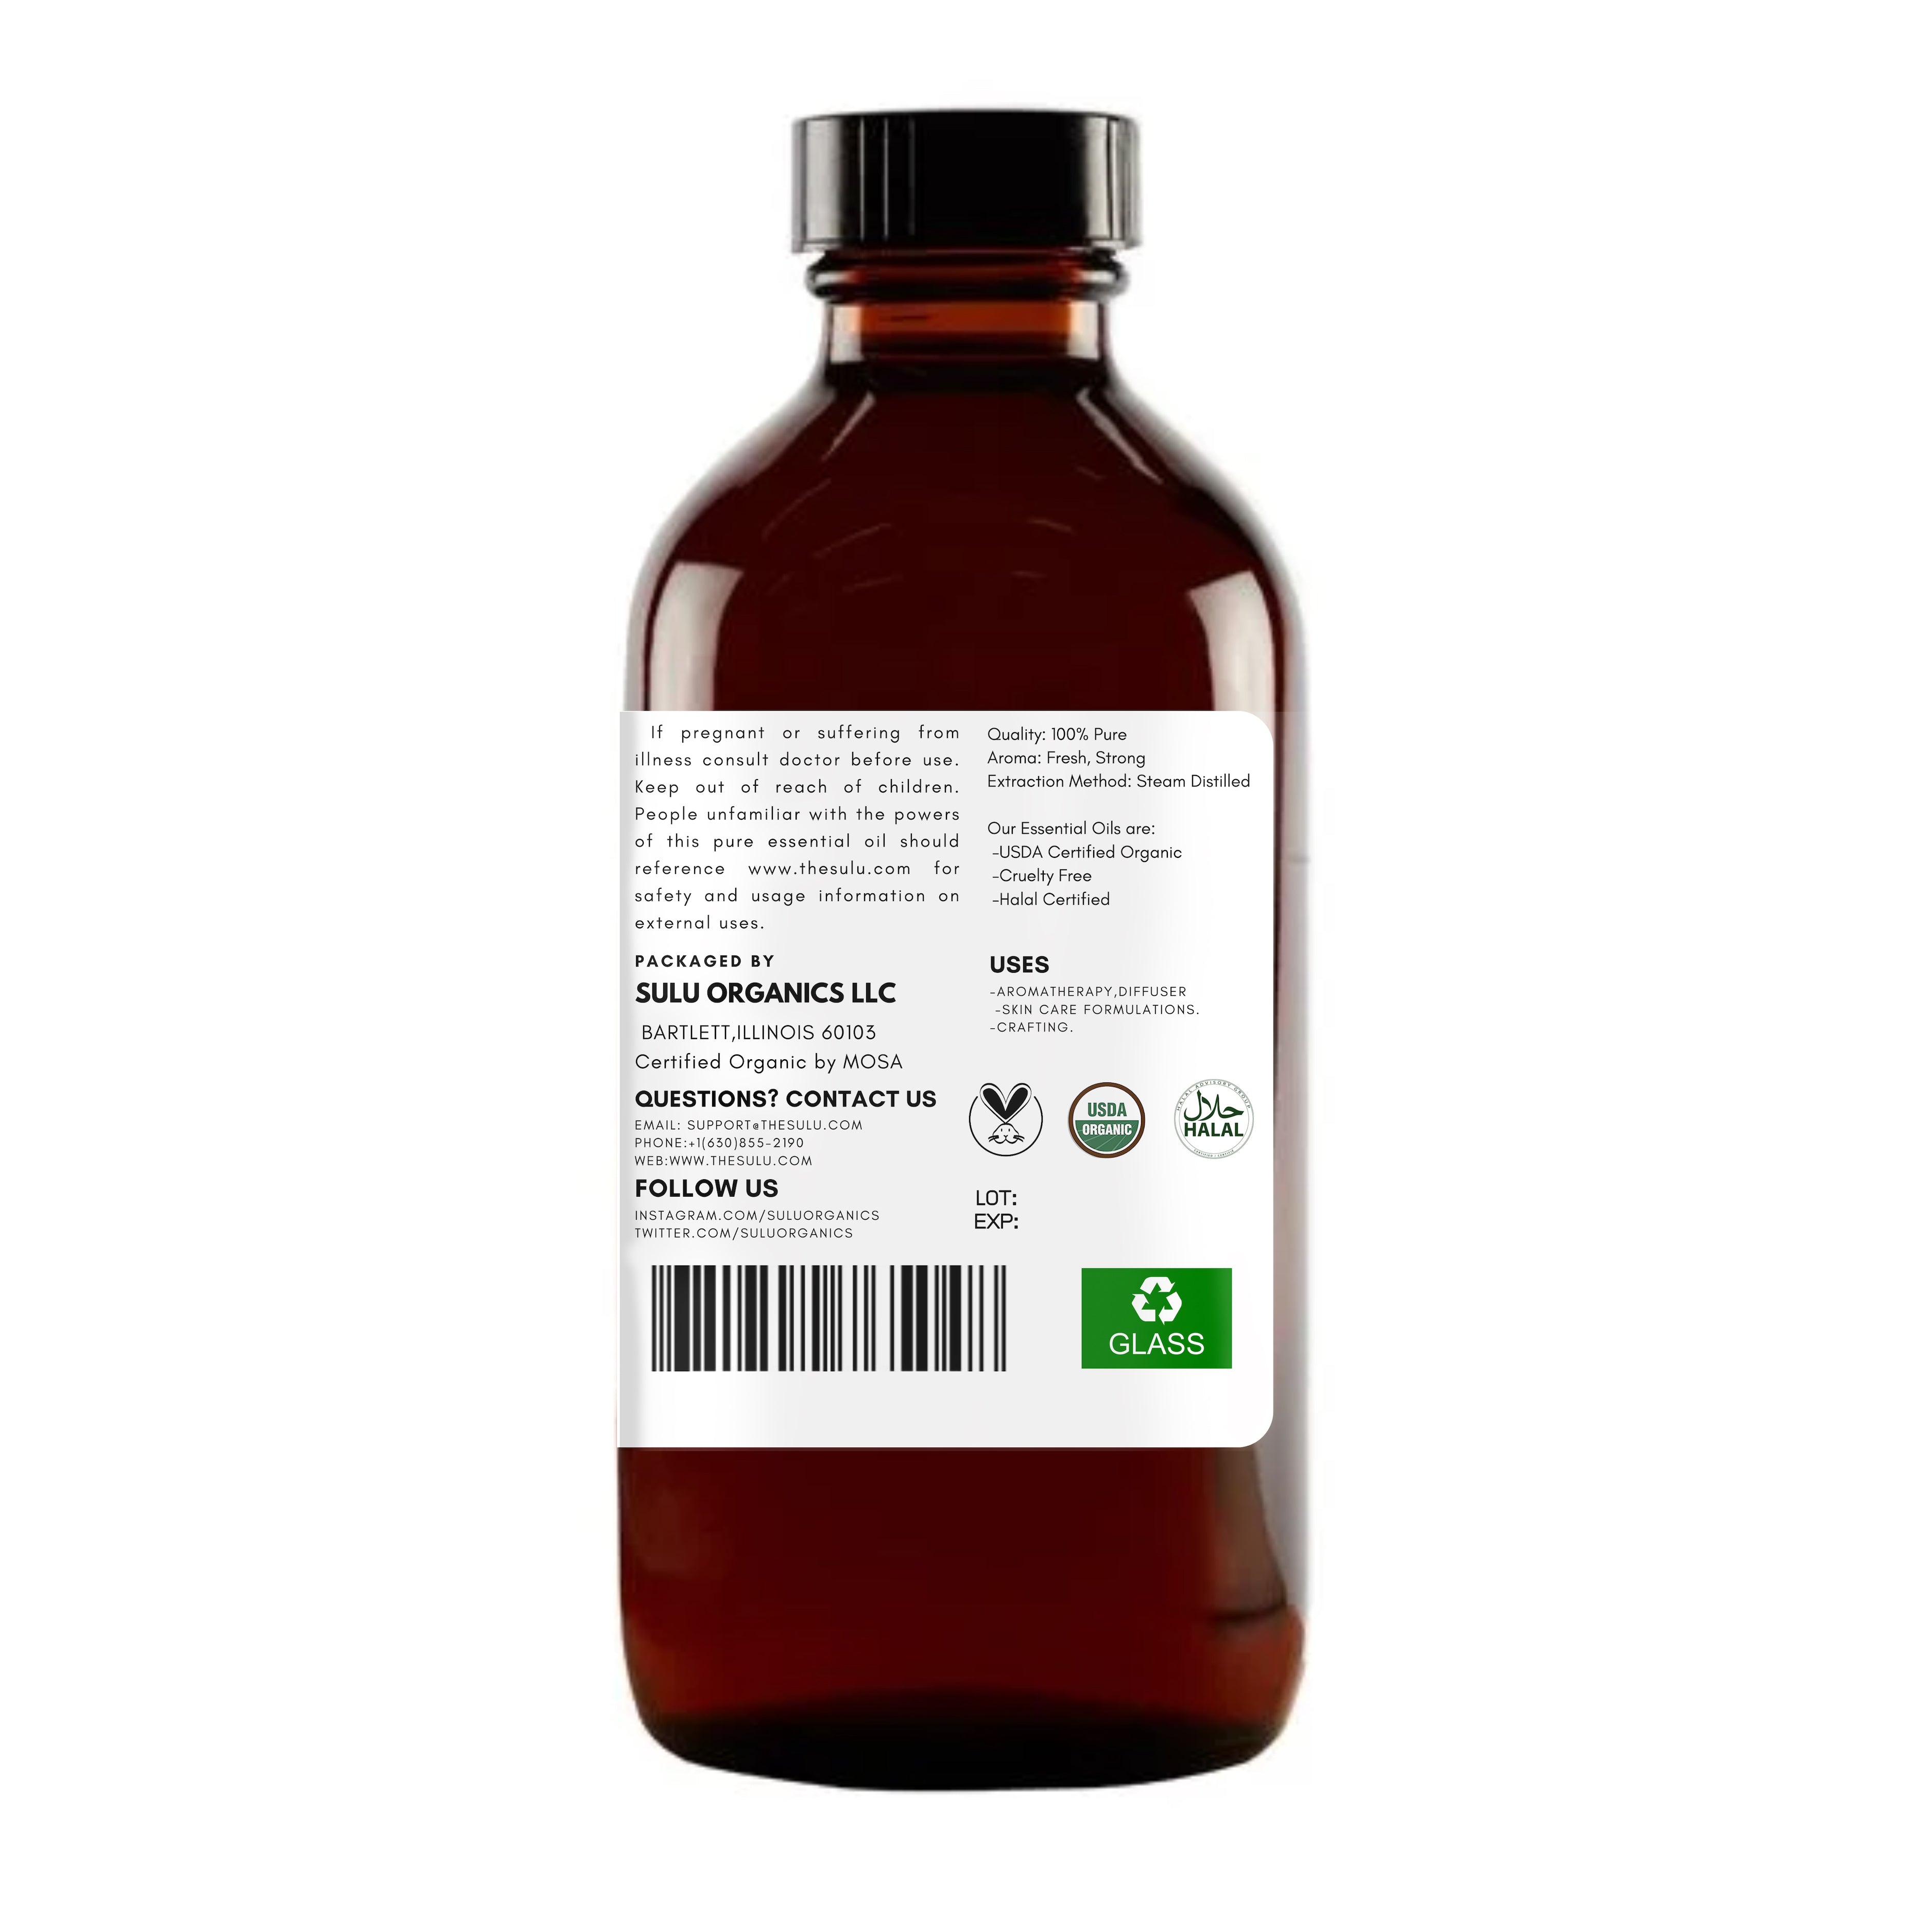 Nutmeg 100% Pure Essential Oil (Therapeutic Grade) 100% Pure